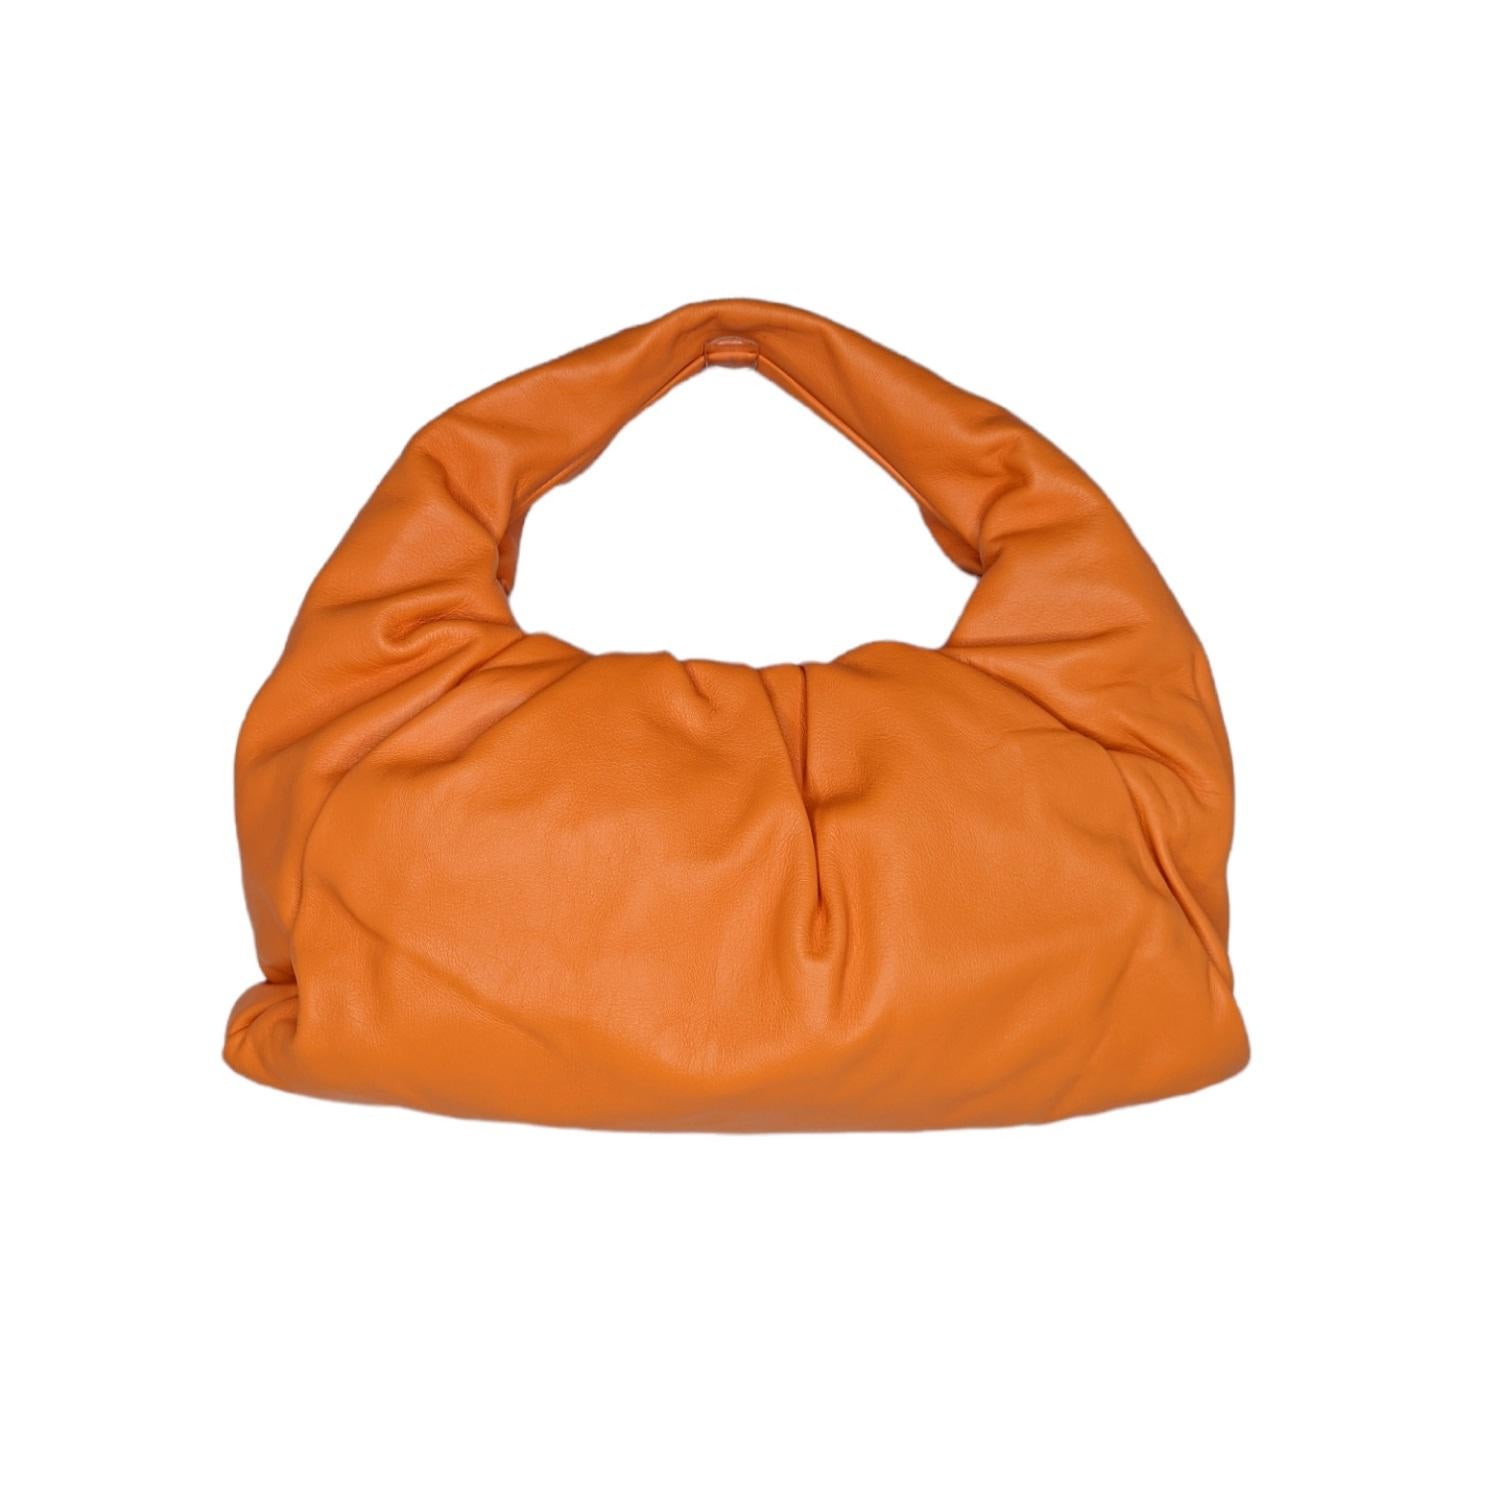 Cette pochette élégante est réalisée en cuir de veau de couleur orange clair. Le sac est doté d'un couvercle magnétique en cuir froncé qui s'ouvre sur un intérieur en cuir assorti et une anse supérieure en boucle. Appréciez la sophistication chic de